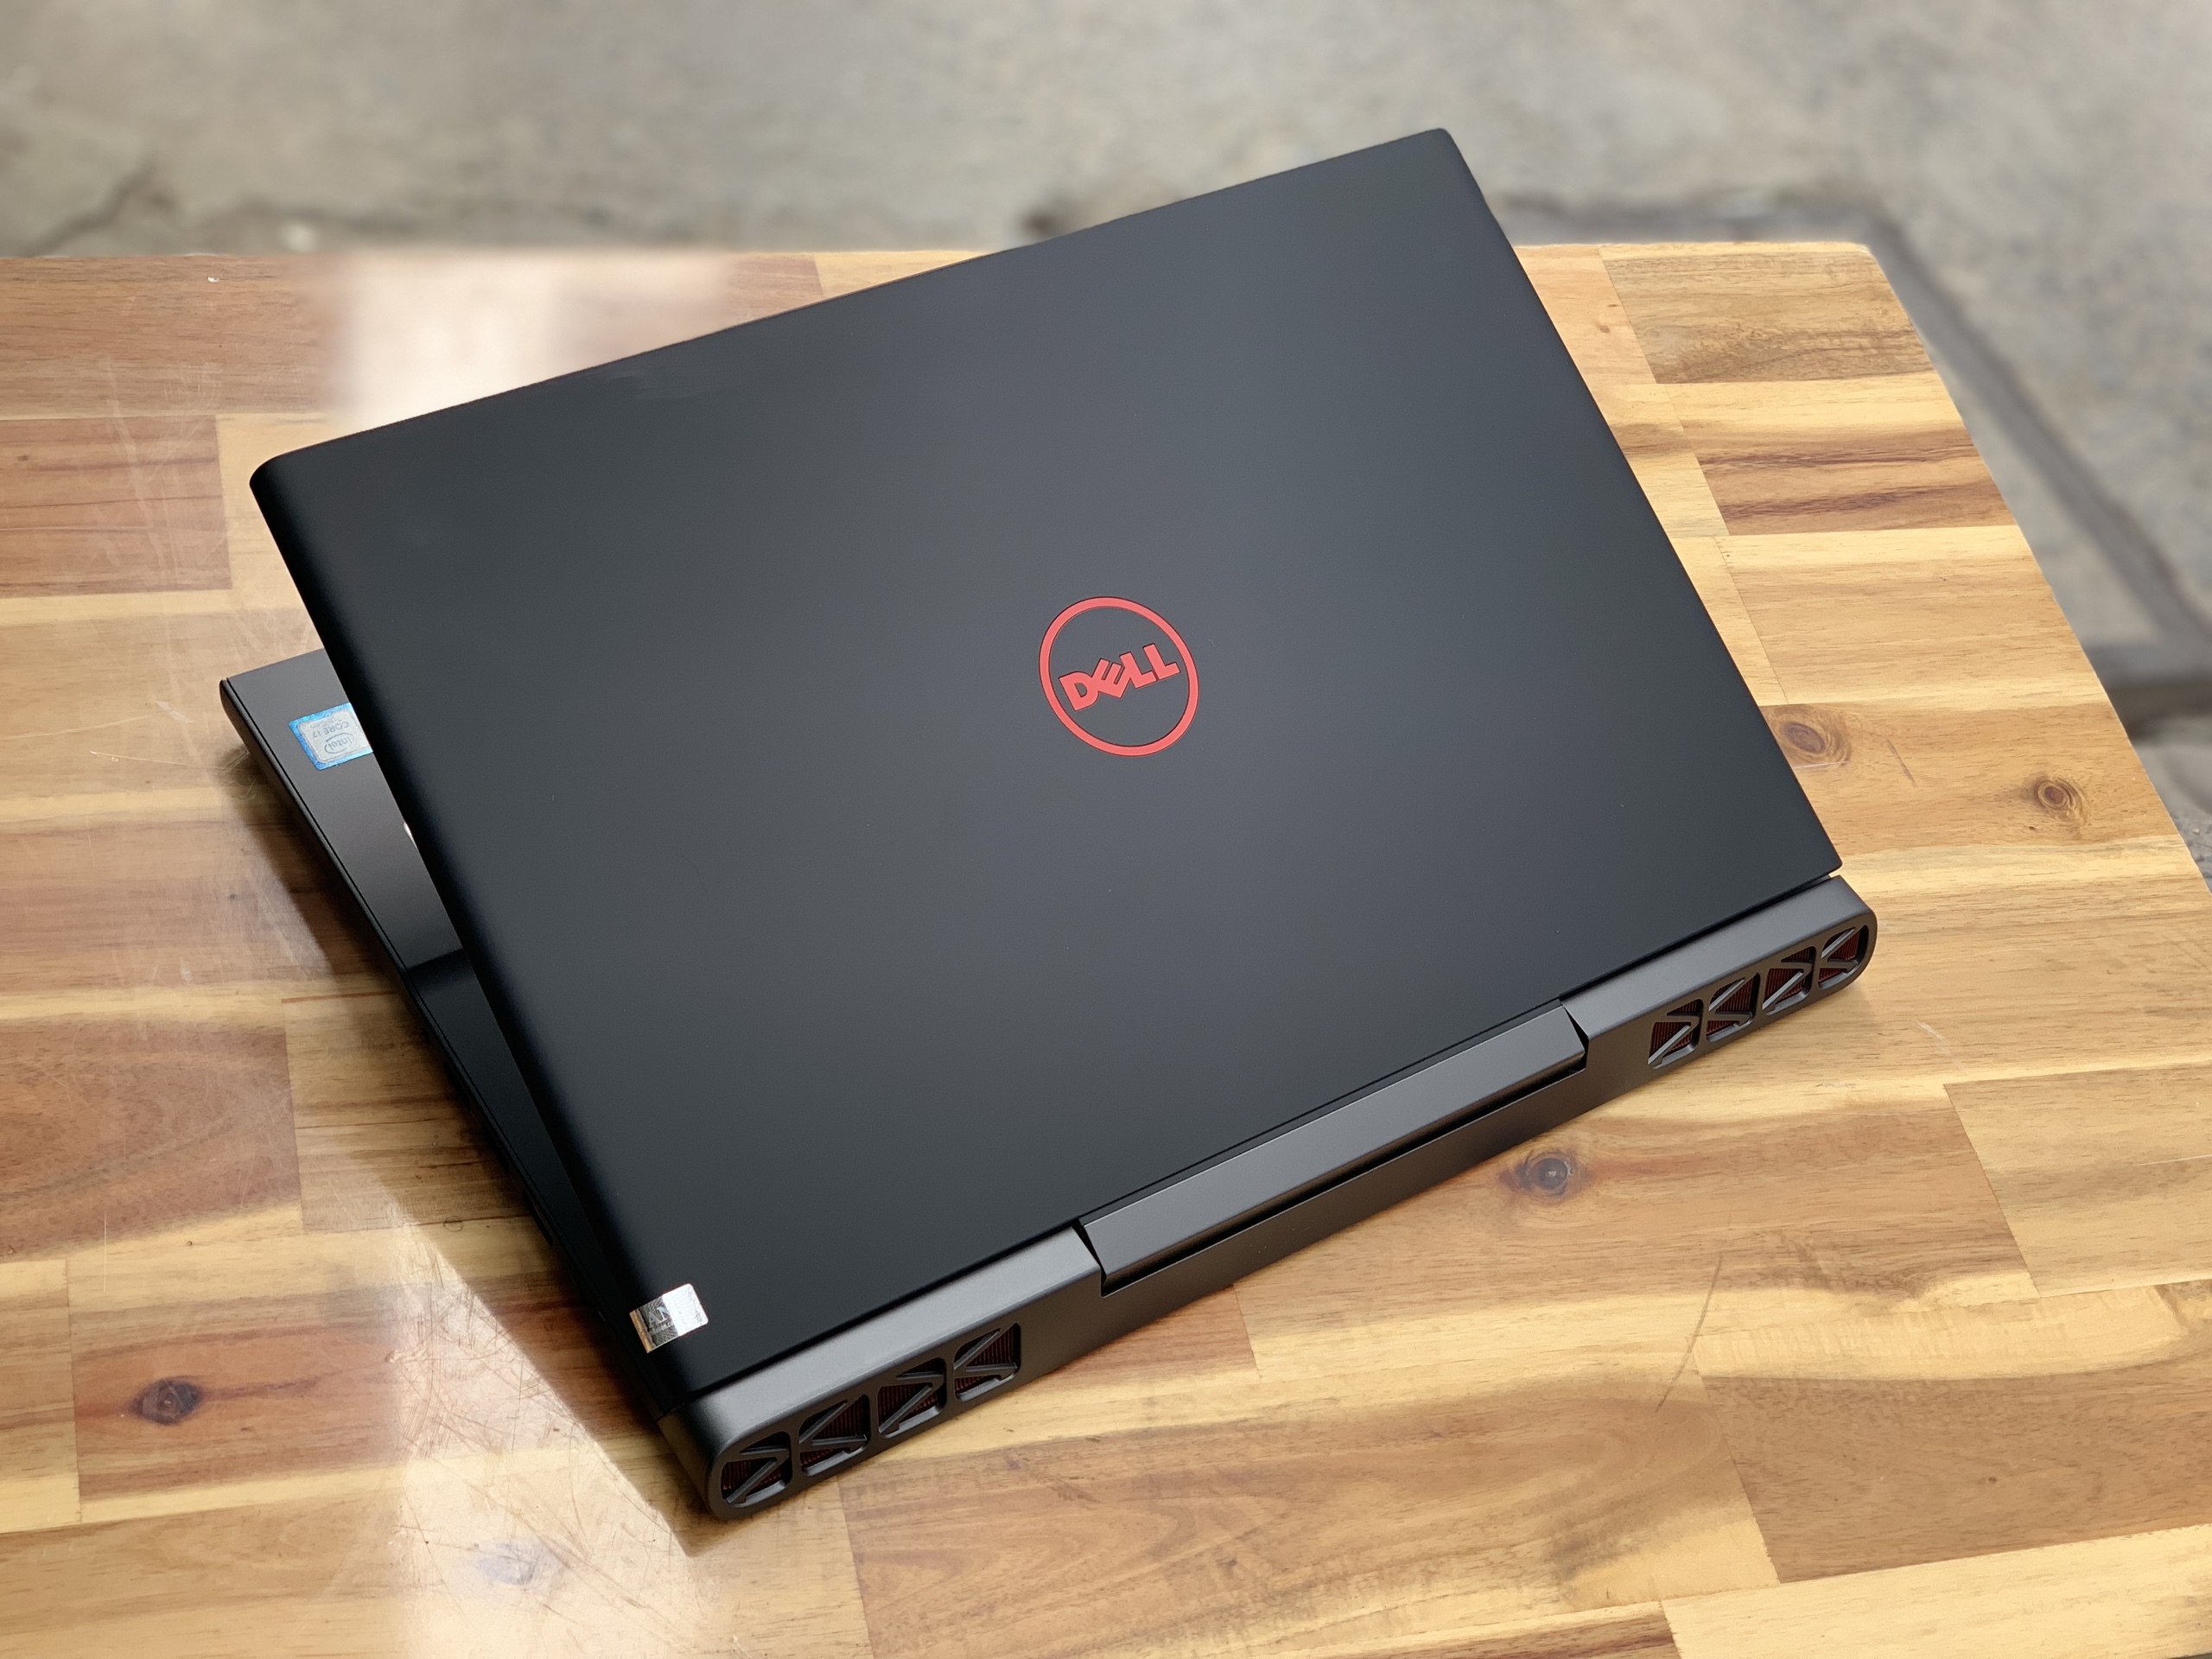 Laptop Dell Gaming 7566, i7 6700HQ 8G SSD128+500G Vga GTX960M 4G FULL HD Đèn phím Đẹp zin 100% Giá rẻ1